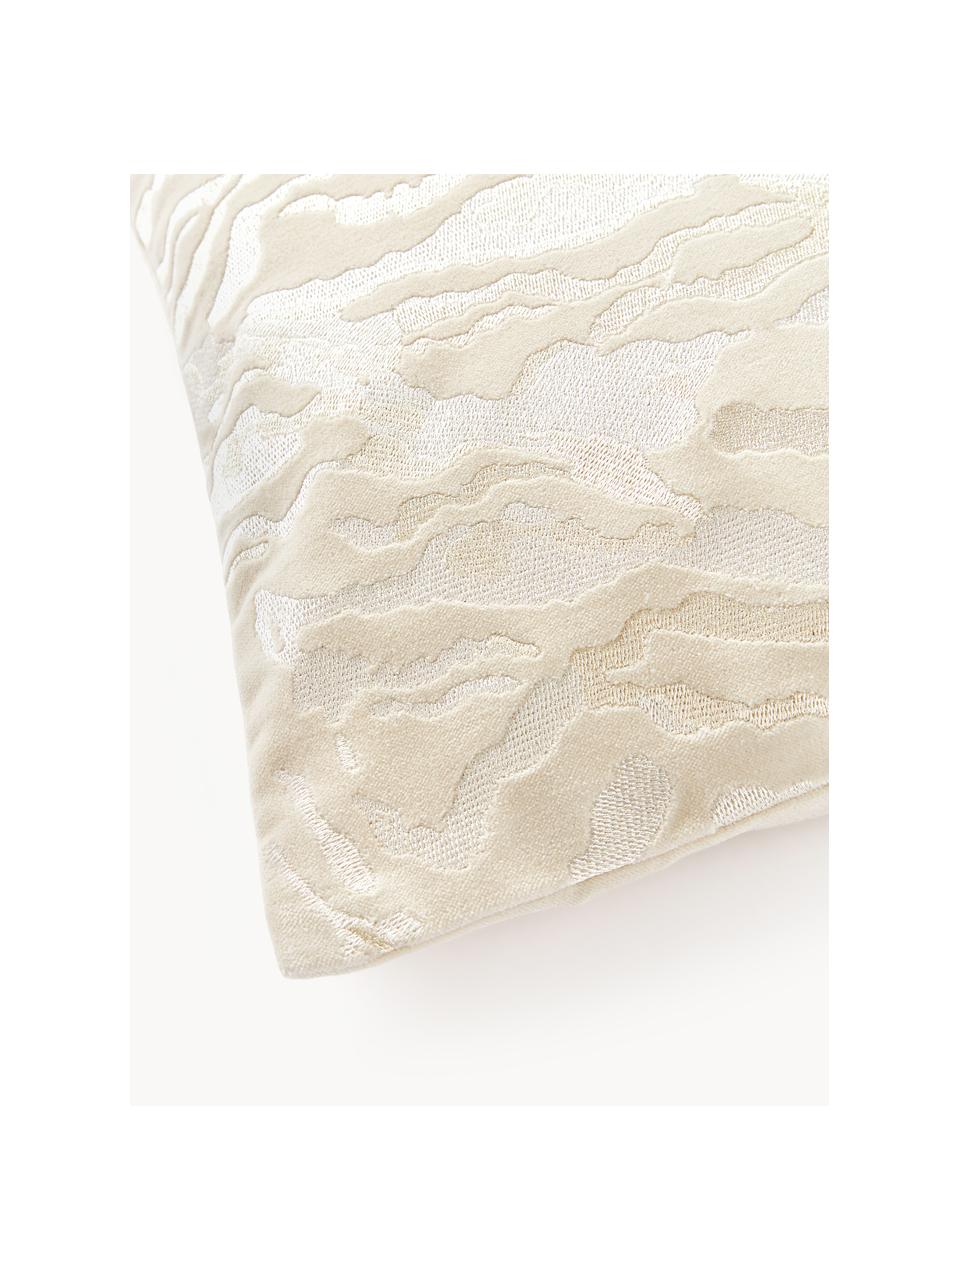 Copricuscino in velluto astratto Phoenix, 100 % cotone, velluto, Bianco latte, Larg. 45 x Lung. 45 cm